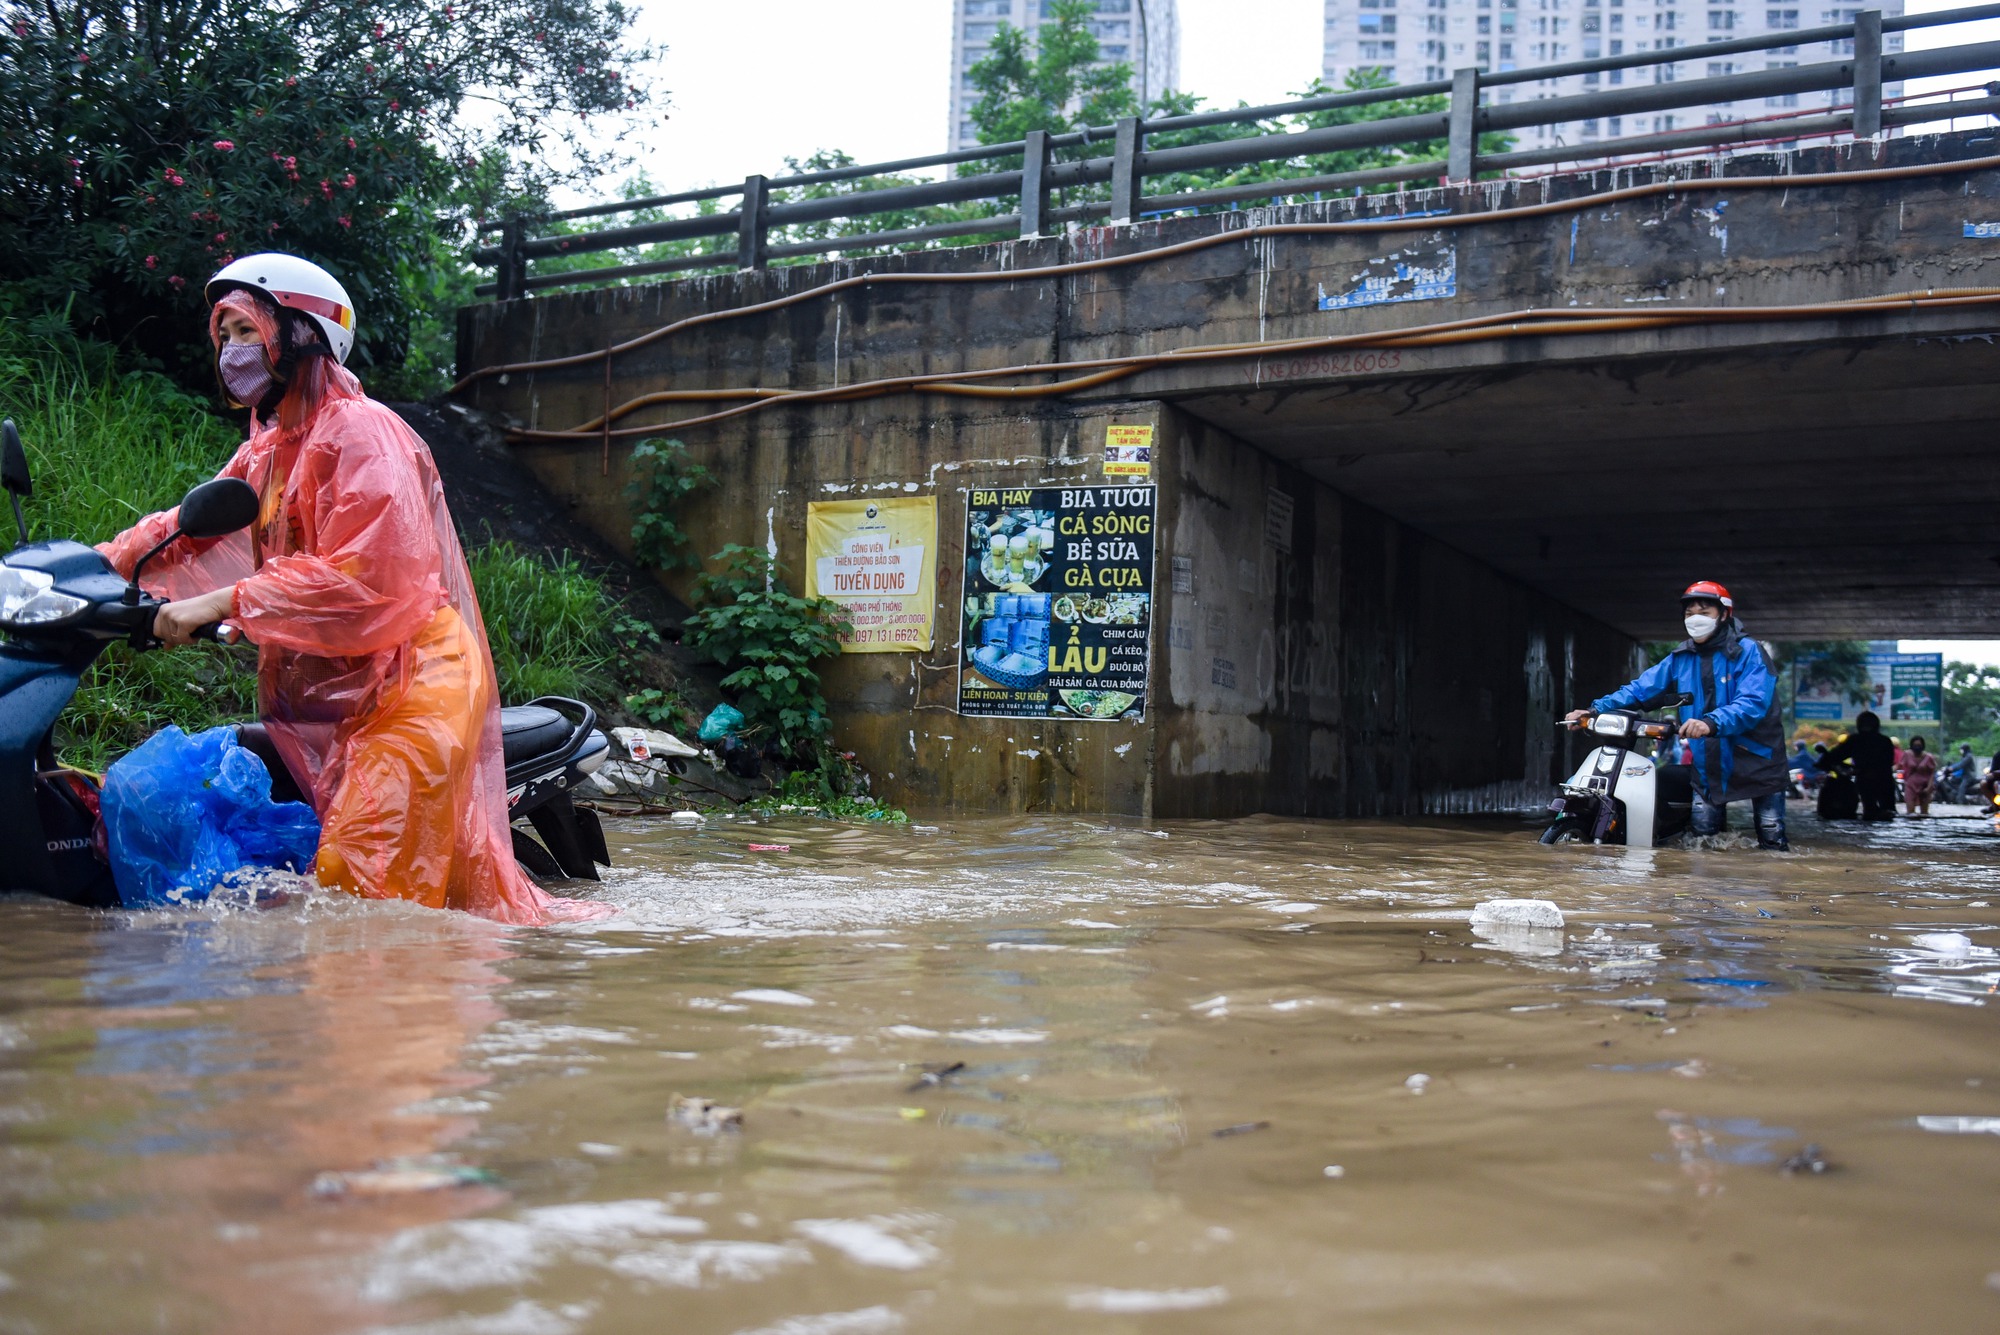 Đường gom đại lộ Thăng Long chìm trong biển nước sau trận mưa lớn - Ảnh 4.